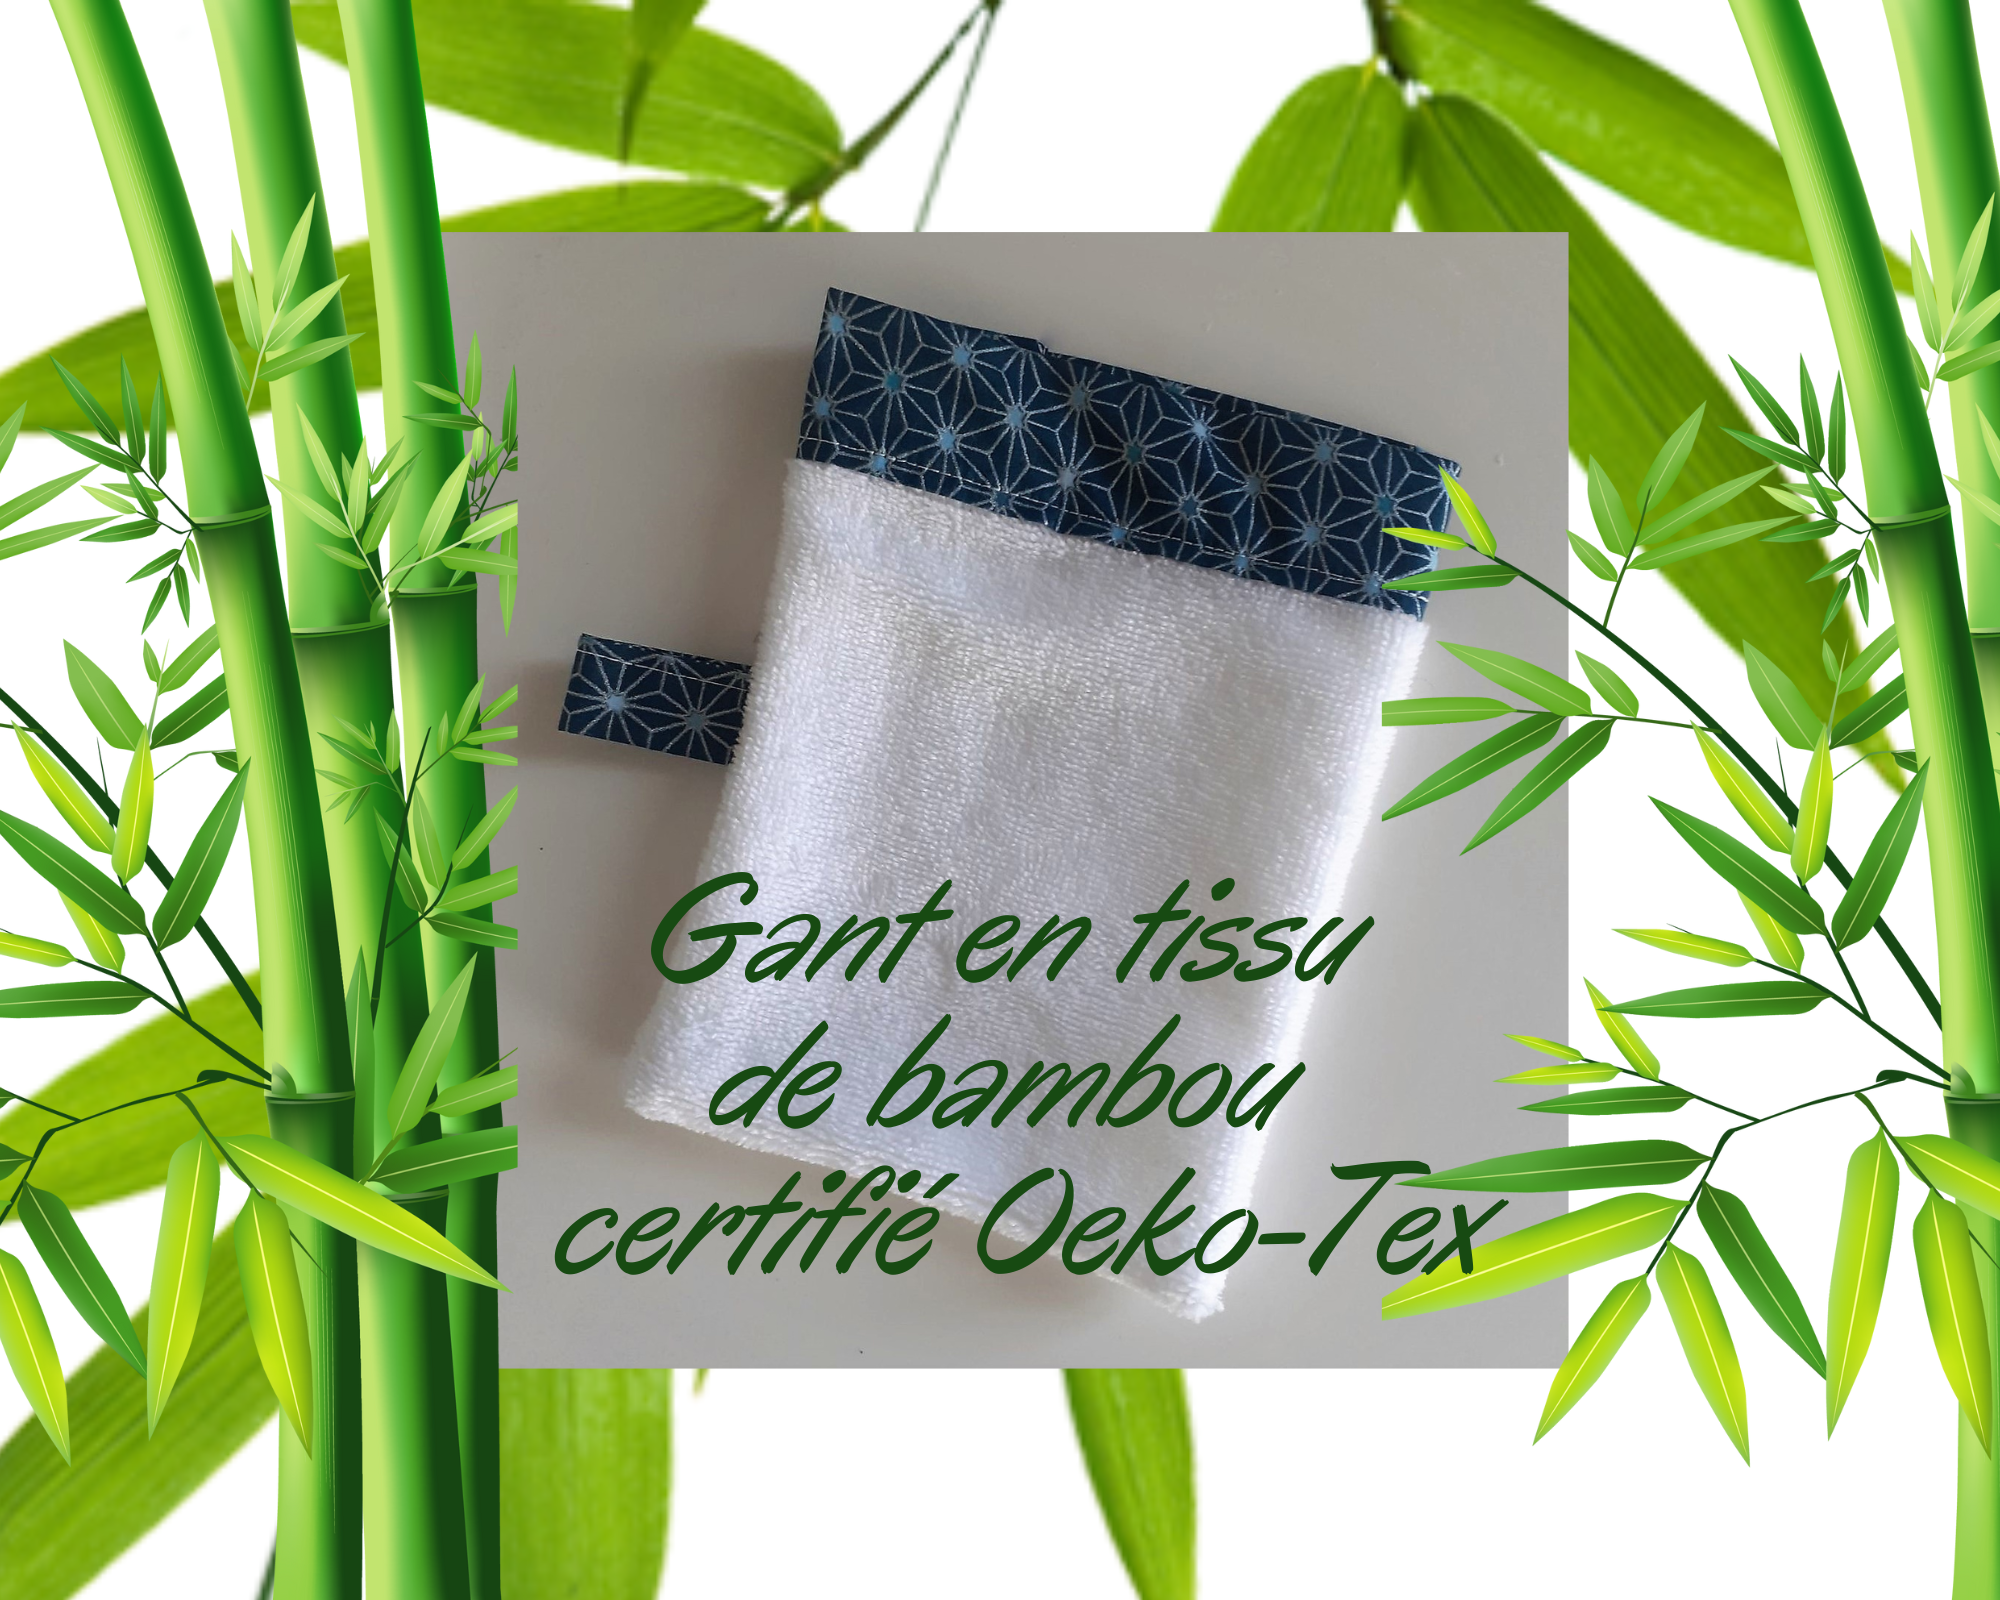 Gant en tissu de bambou certifié Oeko-Tex du Savon des Accates